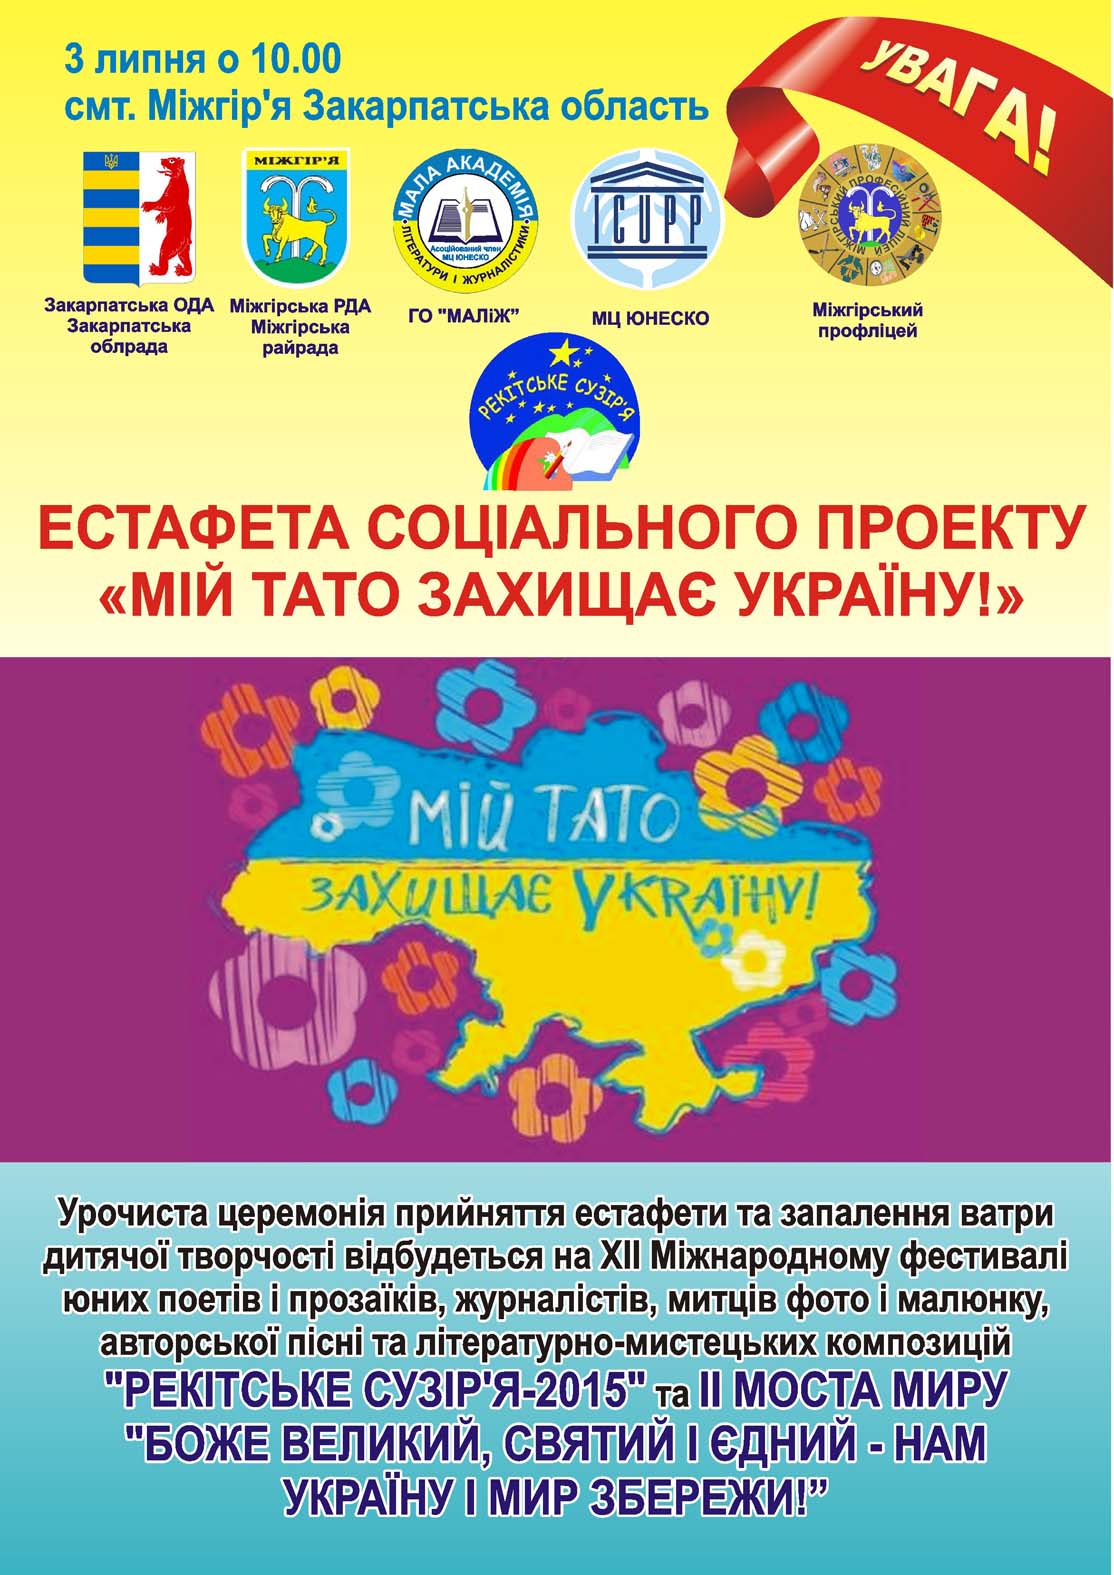 Основная цель проекта «Мой папа защищает Украину!» является психологическая поддержка детей участников АТО, привлечение их к активному досугу, в частности,через участие в творческих конкурсах и культурных мероприятиях.